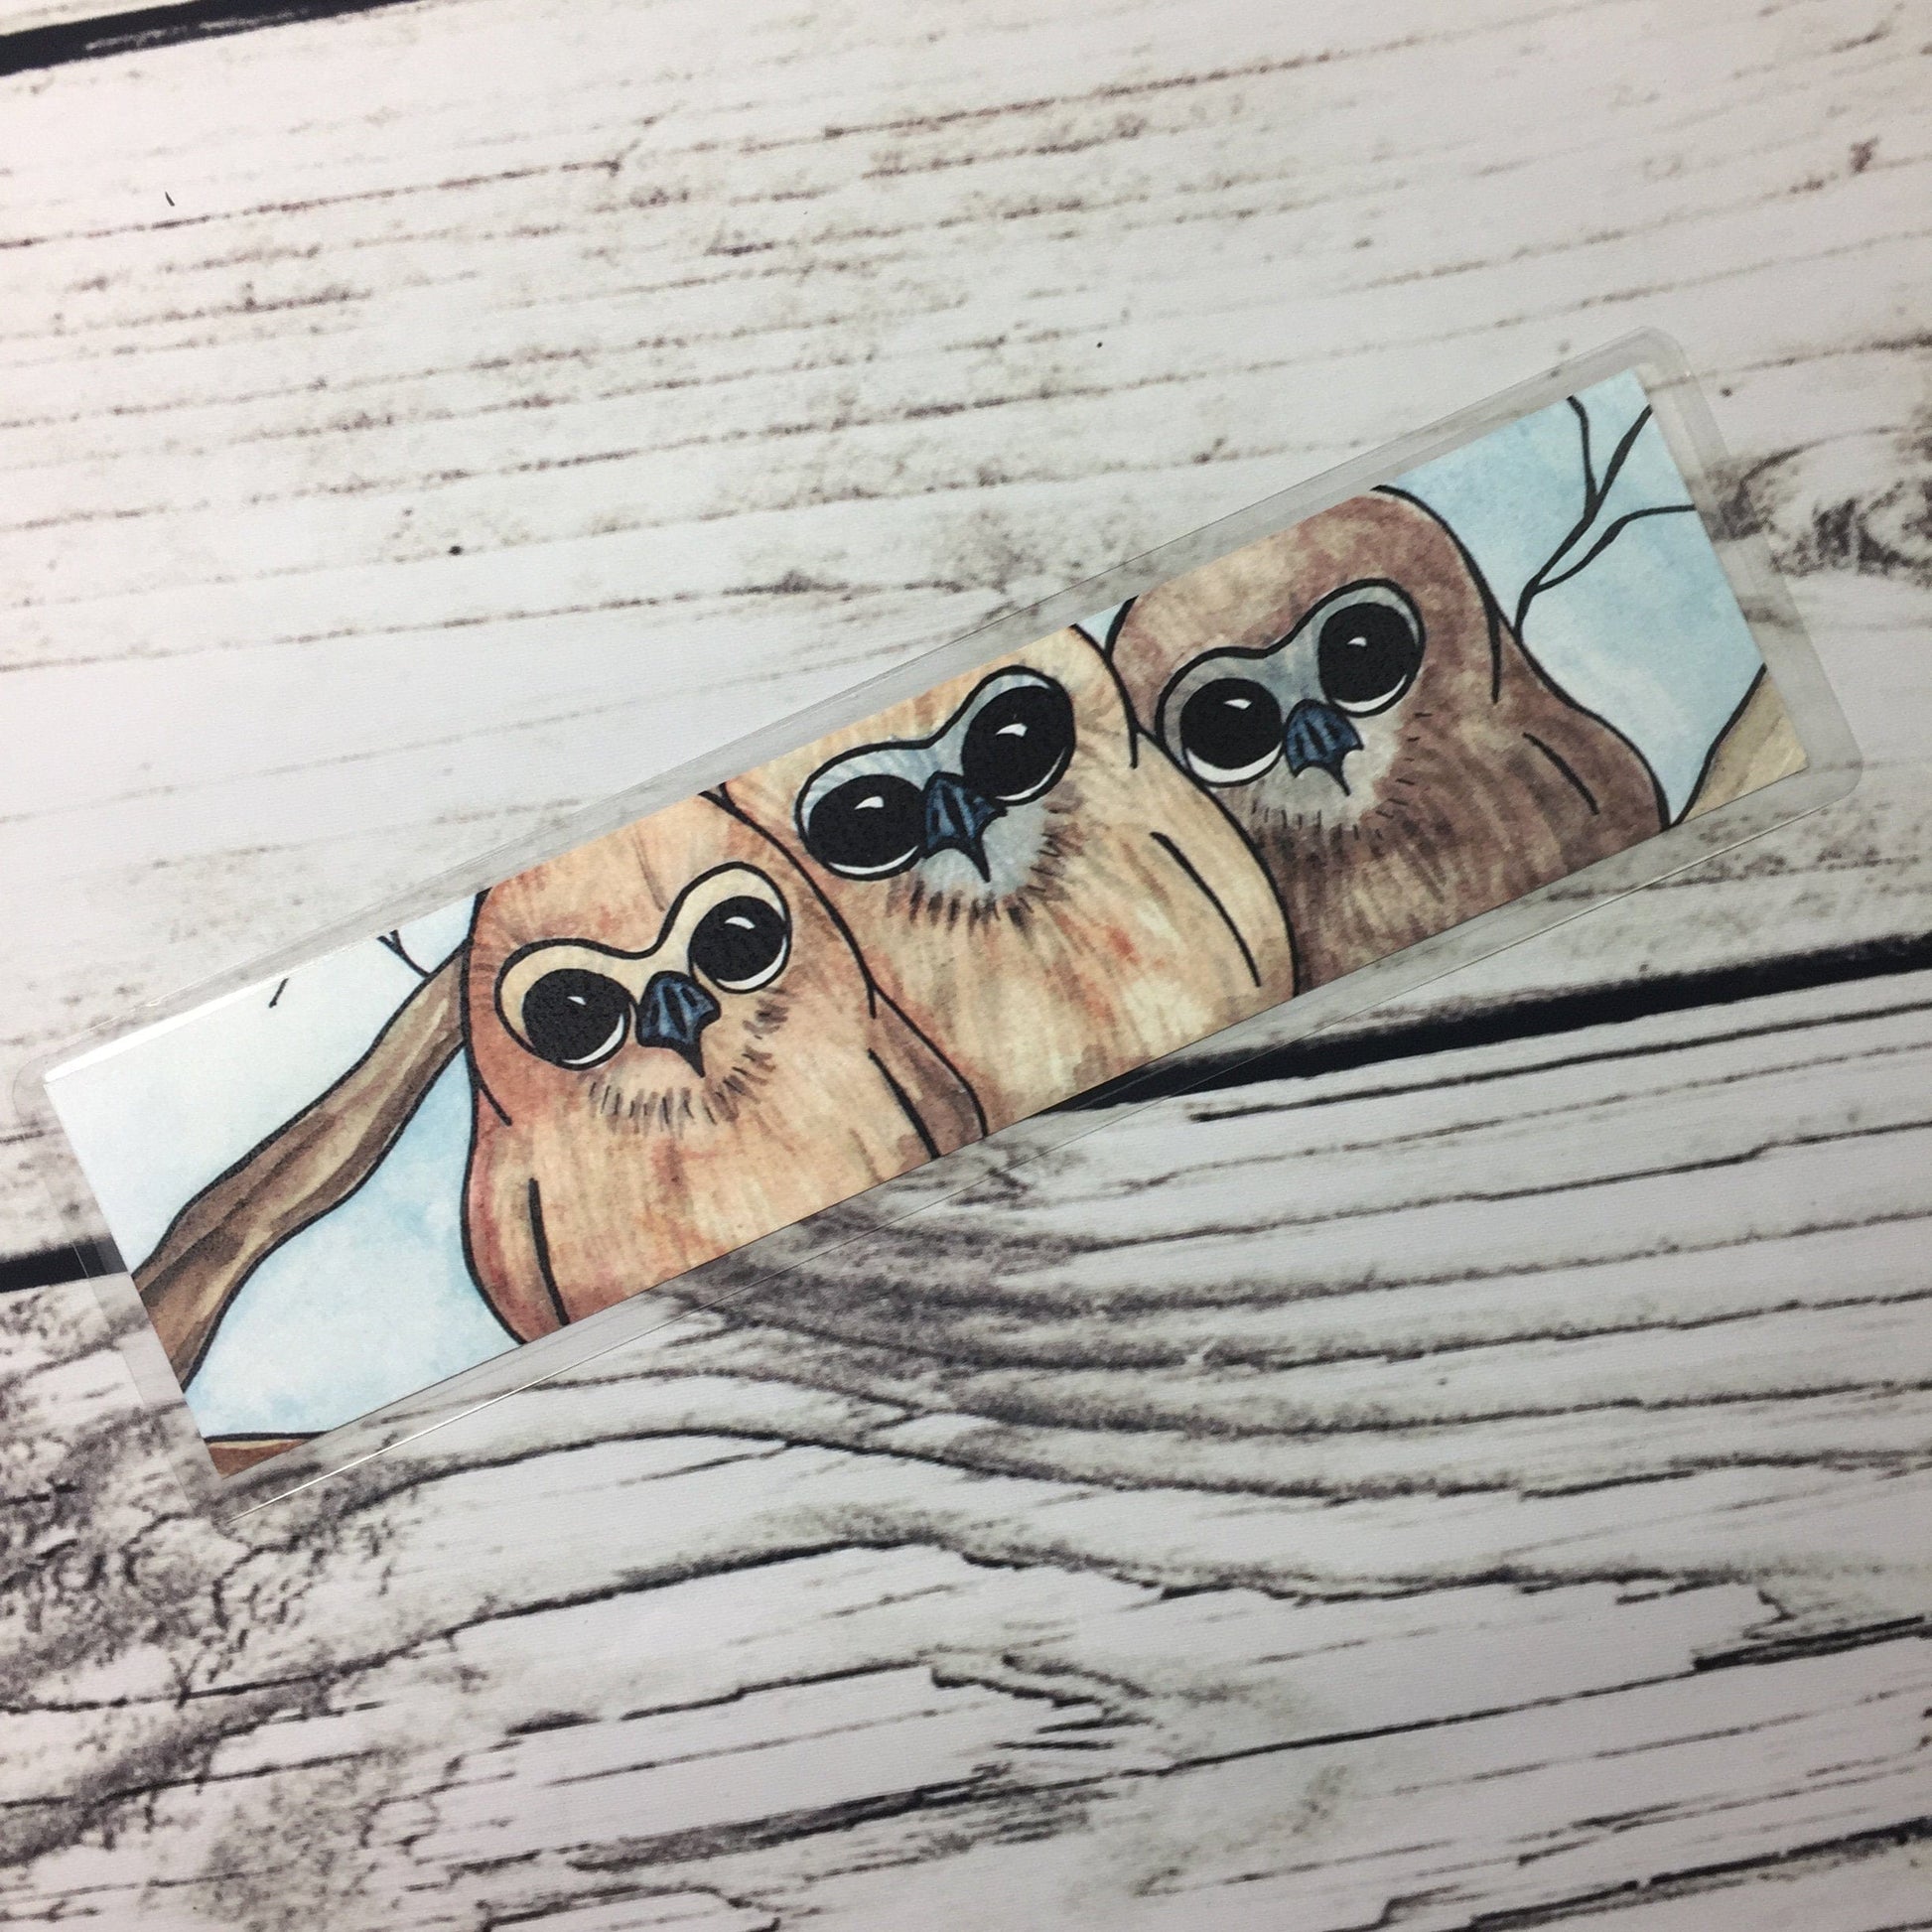 PinkPolish Design Bookmarks "Owl Huddle" 2-Sided Bookmark